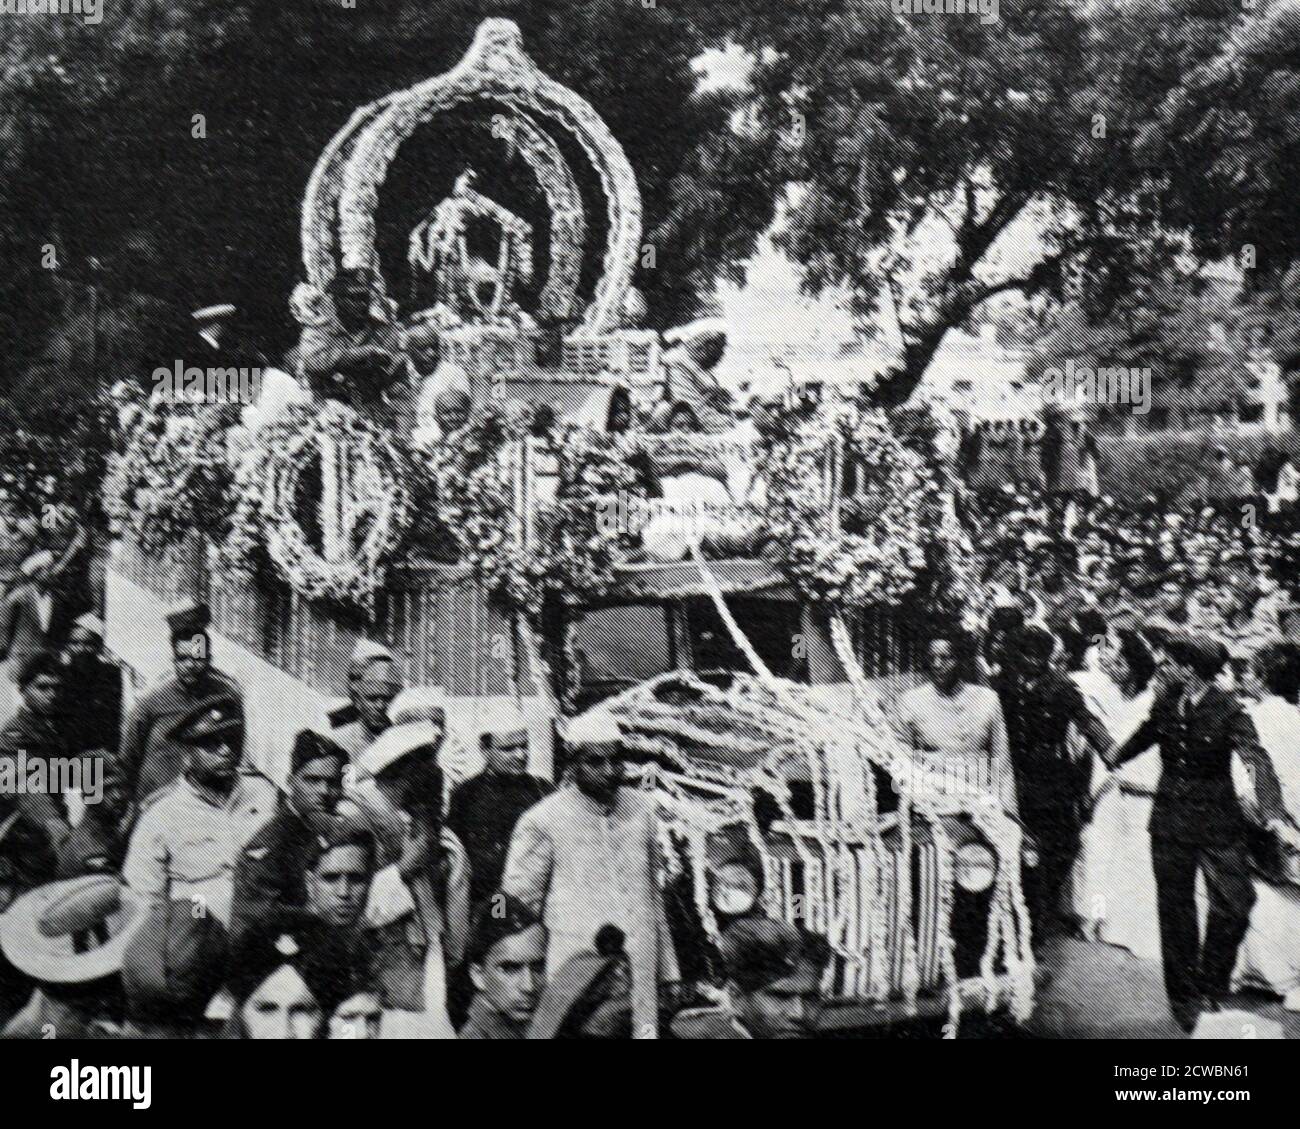 Schwarz-Weiß-Fotografie der Beerdigung von Mahatma Mohandas K. Gandhi (1869-1948), der am 30. Januar 1948 ermordet wurde. Seine Asche wurde am 12. Februar 1948 in Allahabad eingeäschert. Stockfoto